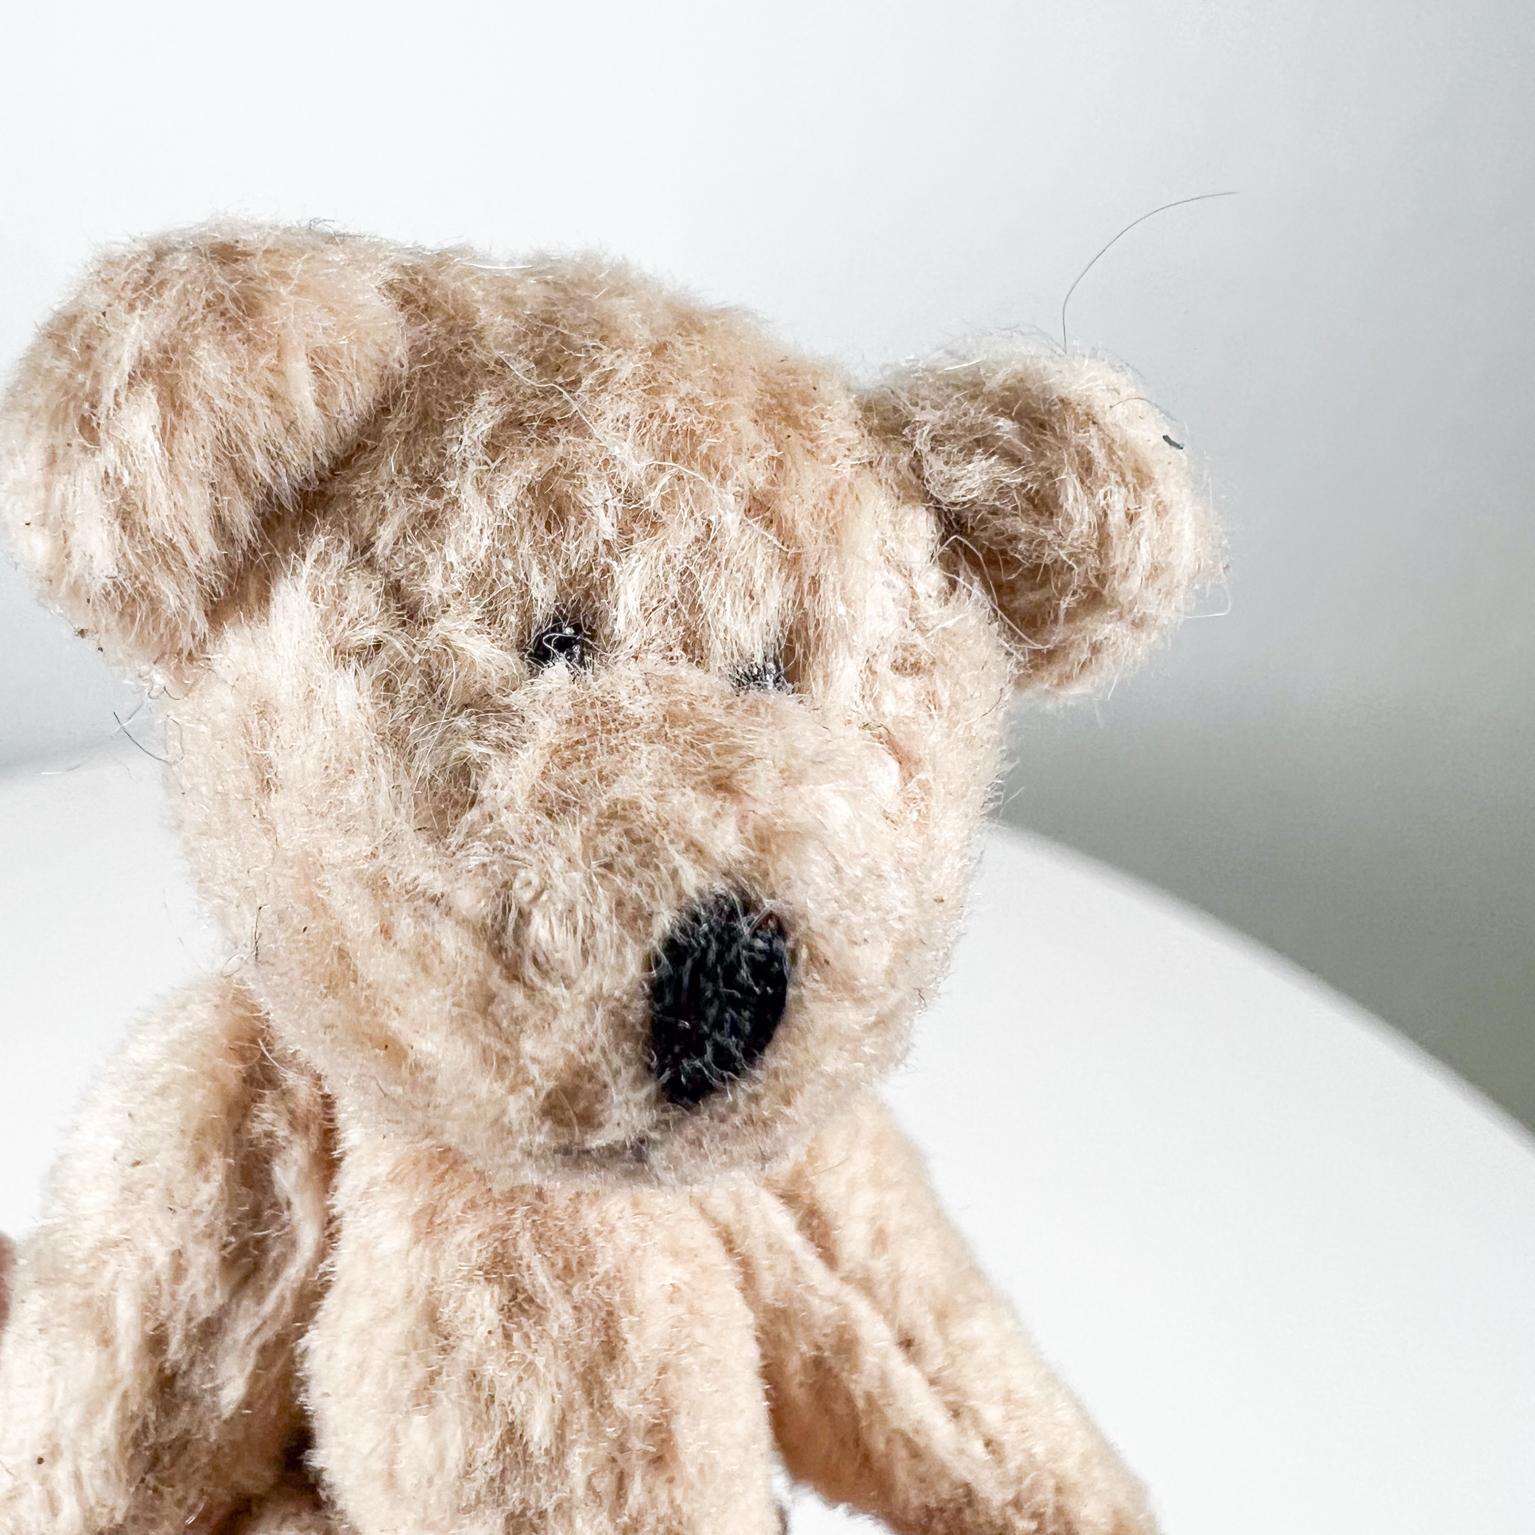 Mid 20th Century Tiny Baby Teddy Bear Soft Huggable Vintage 4